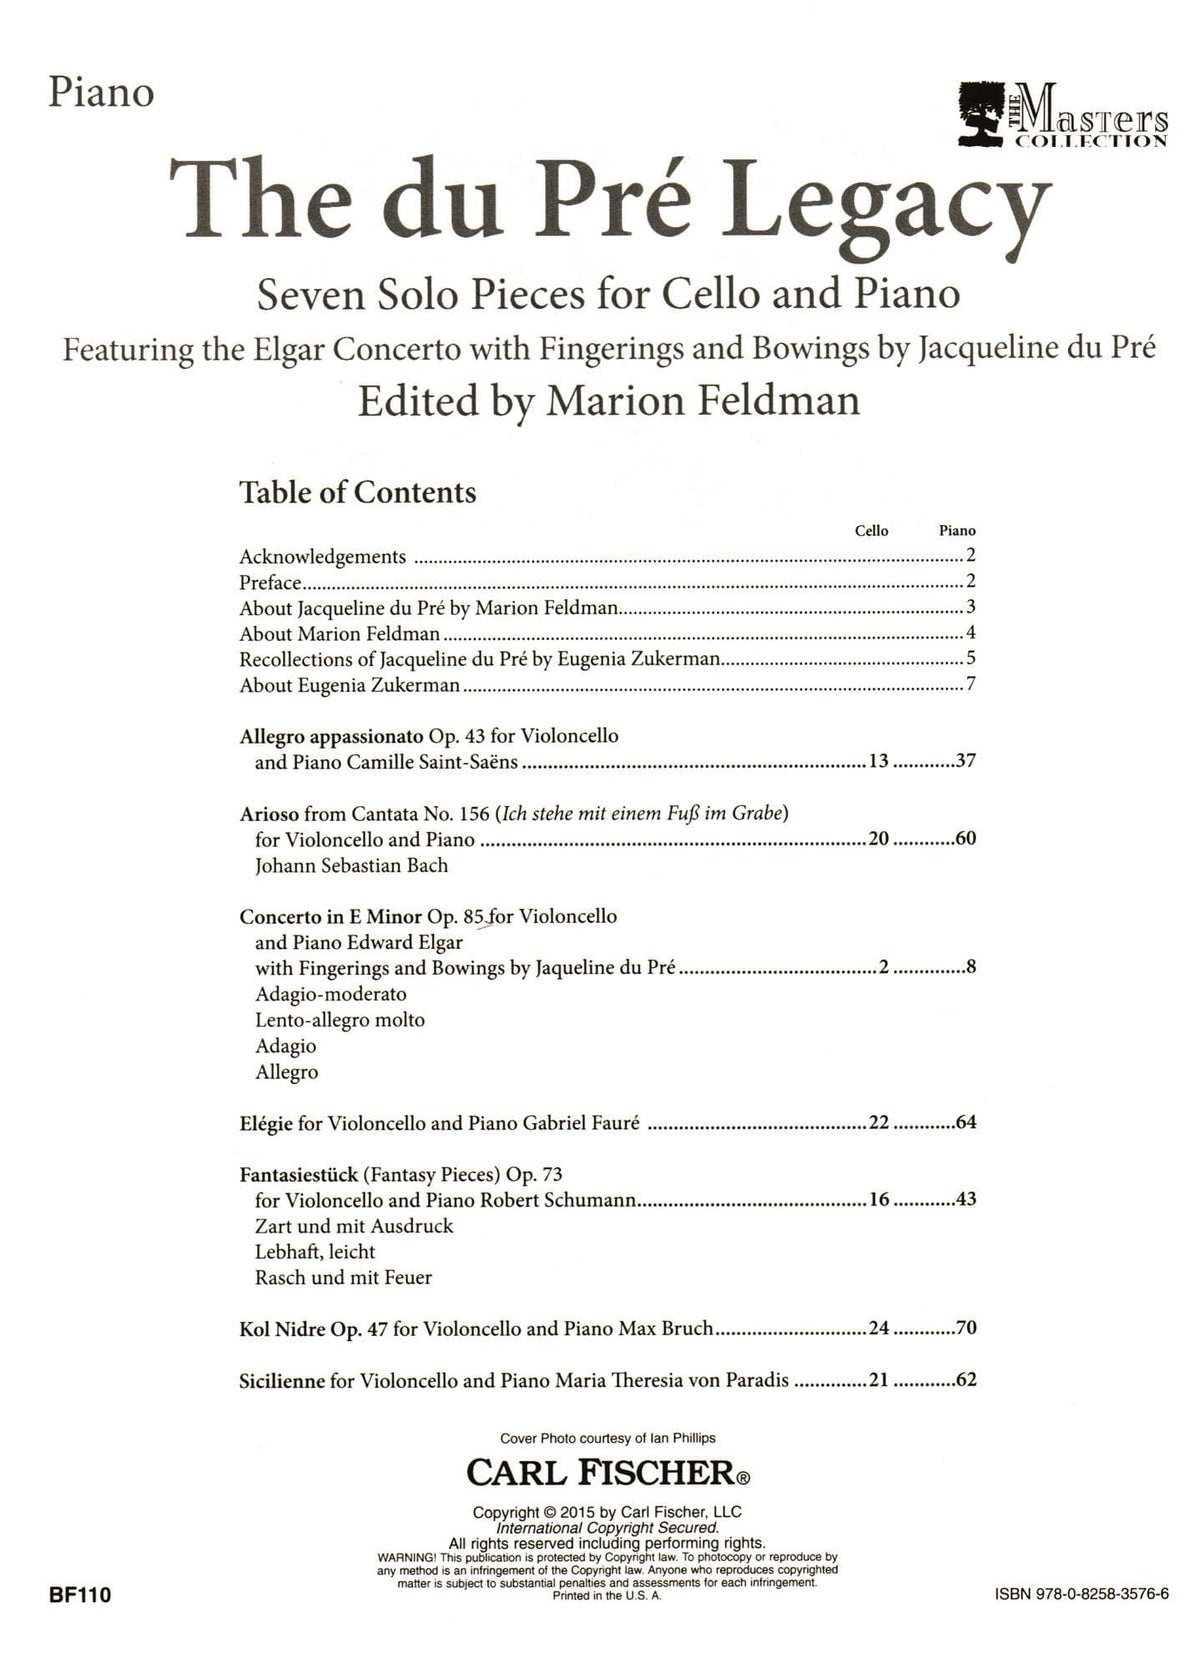 Jacqueline du Pre - The du Pre Legacy - Seven Solos for Cello and Piano - Carl Fischer